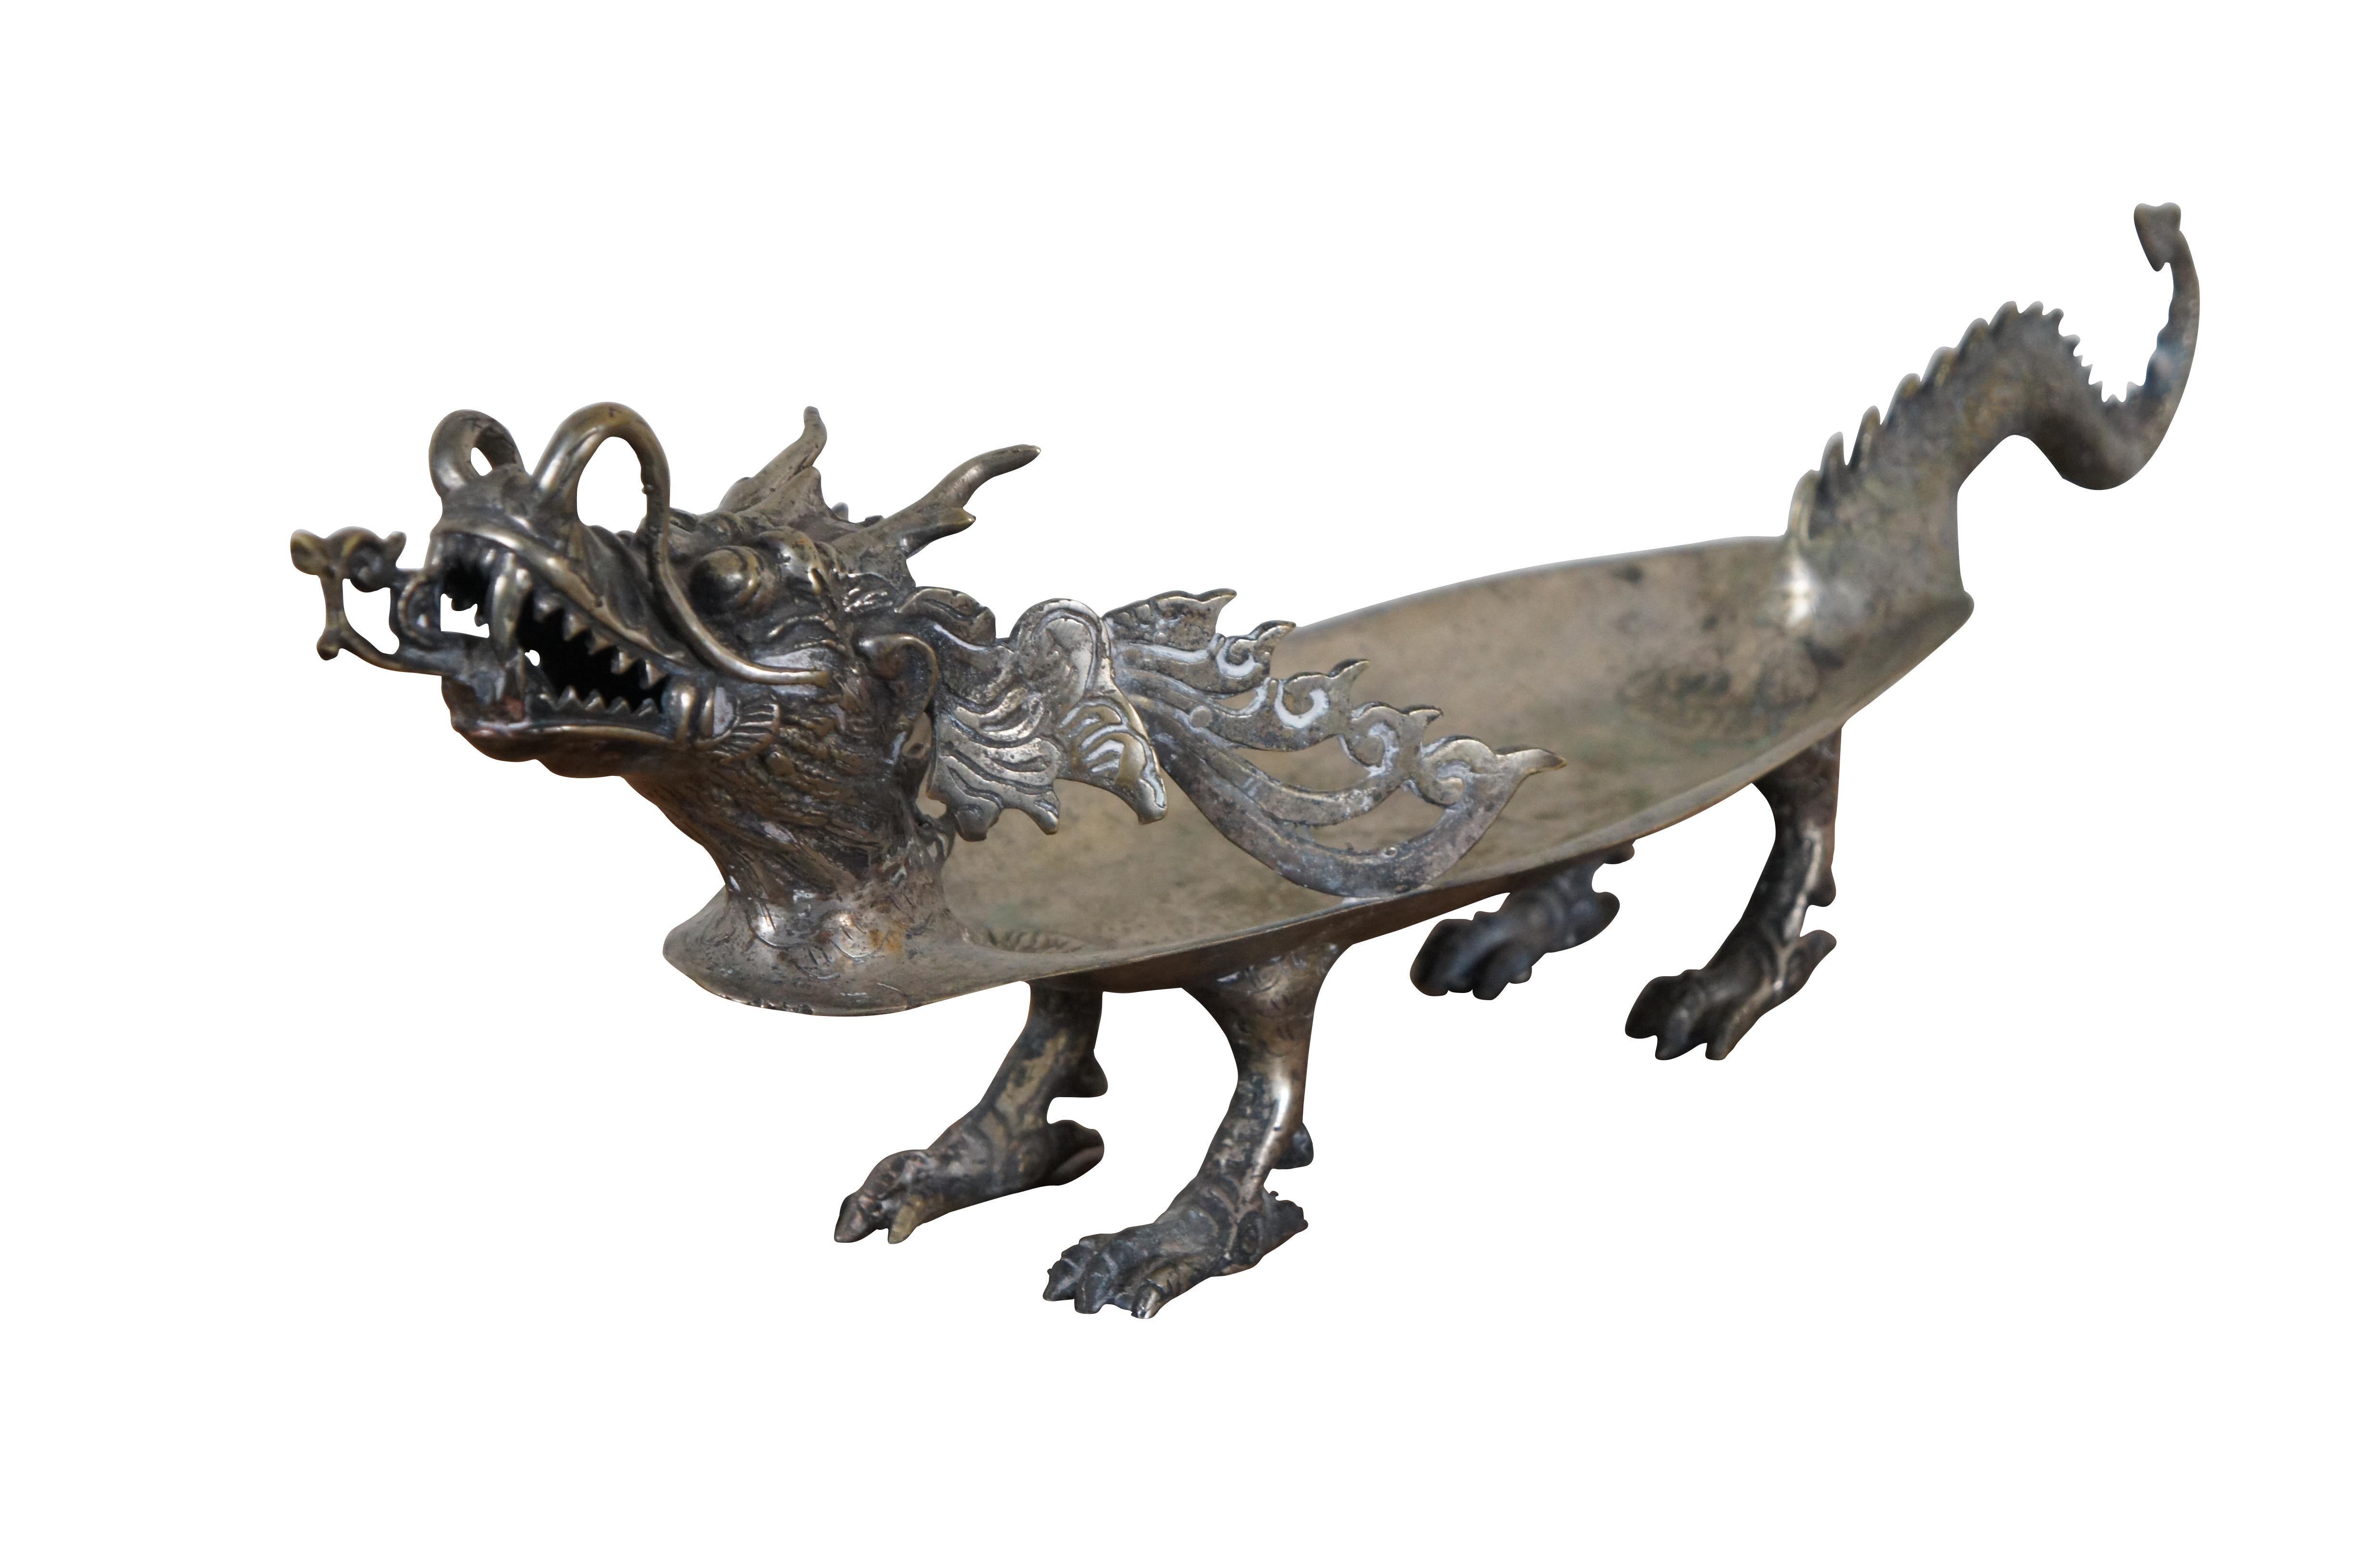 Vintage Chinese Dragon Tablett / Kompott / Fußschale mit ovaler Form mit verzierten skulpturalen Drachen, netzartigen Akzenten und Fuß vier Zehen Basis.

Abmessungen:
22